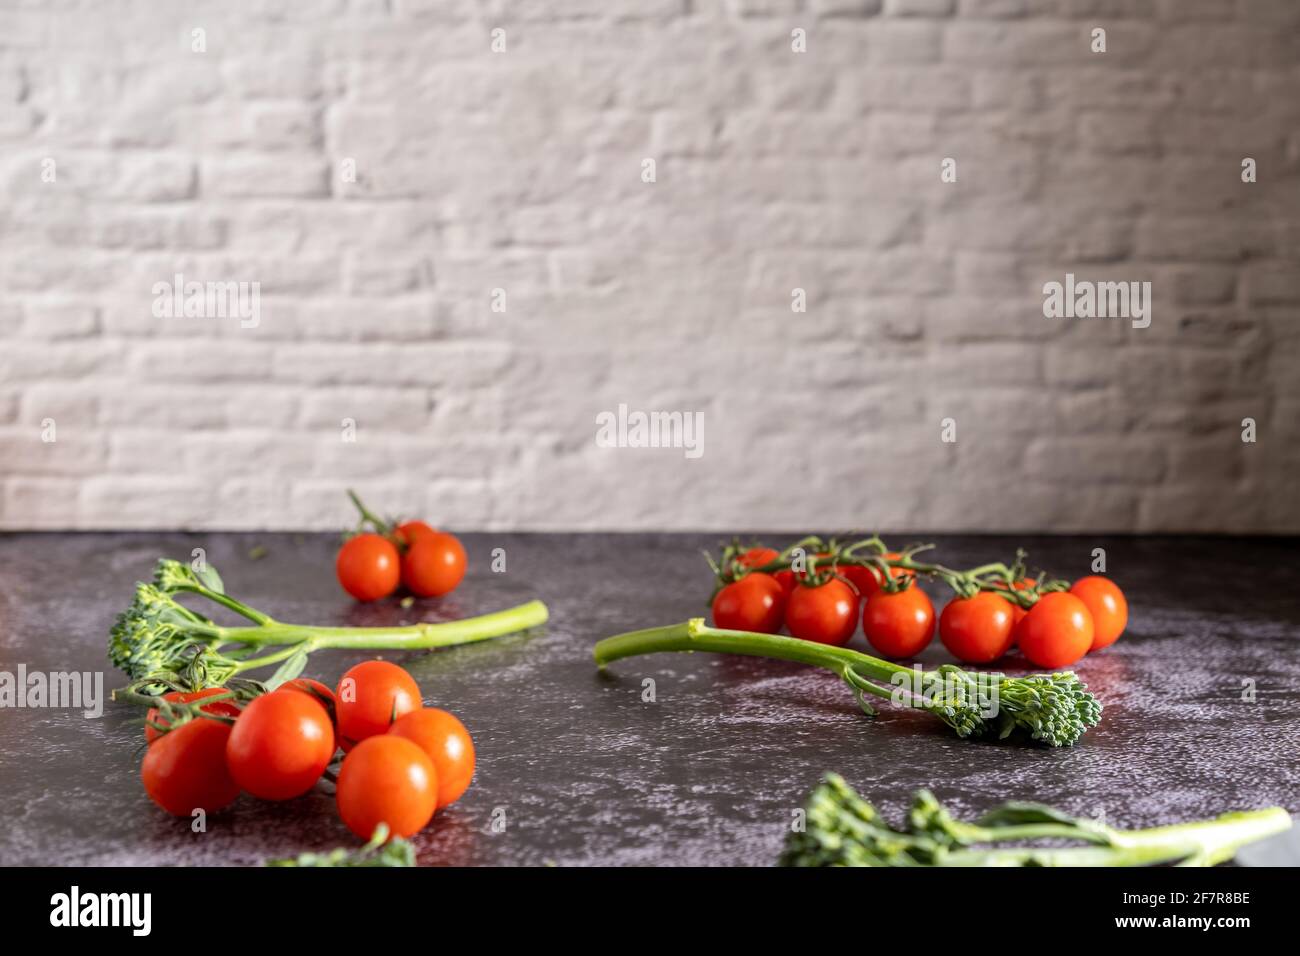 Fotografia alimentare di pomodori ciliegini freschi e bimi su un tavolo di pietra con muro di mattoni. Immagini fisse con uno spazio per la copia. Foto Stock